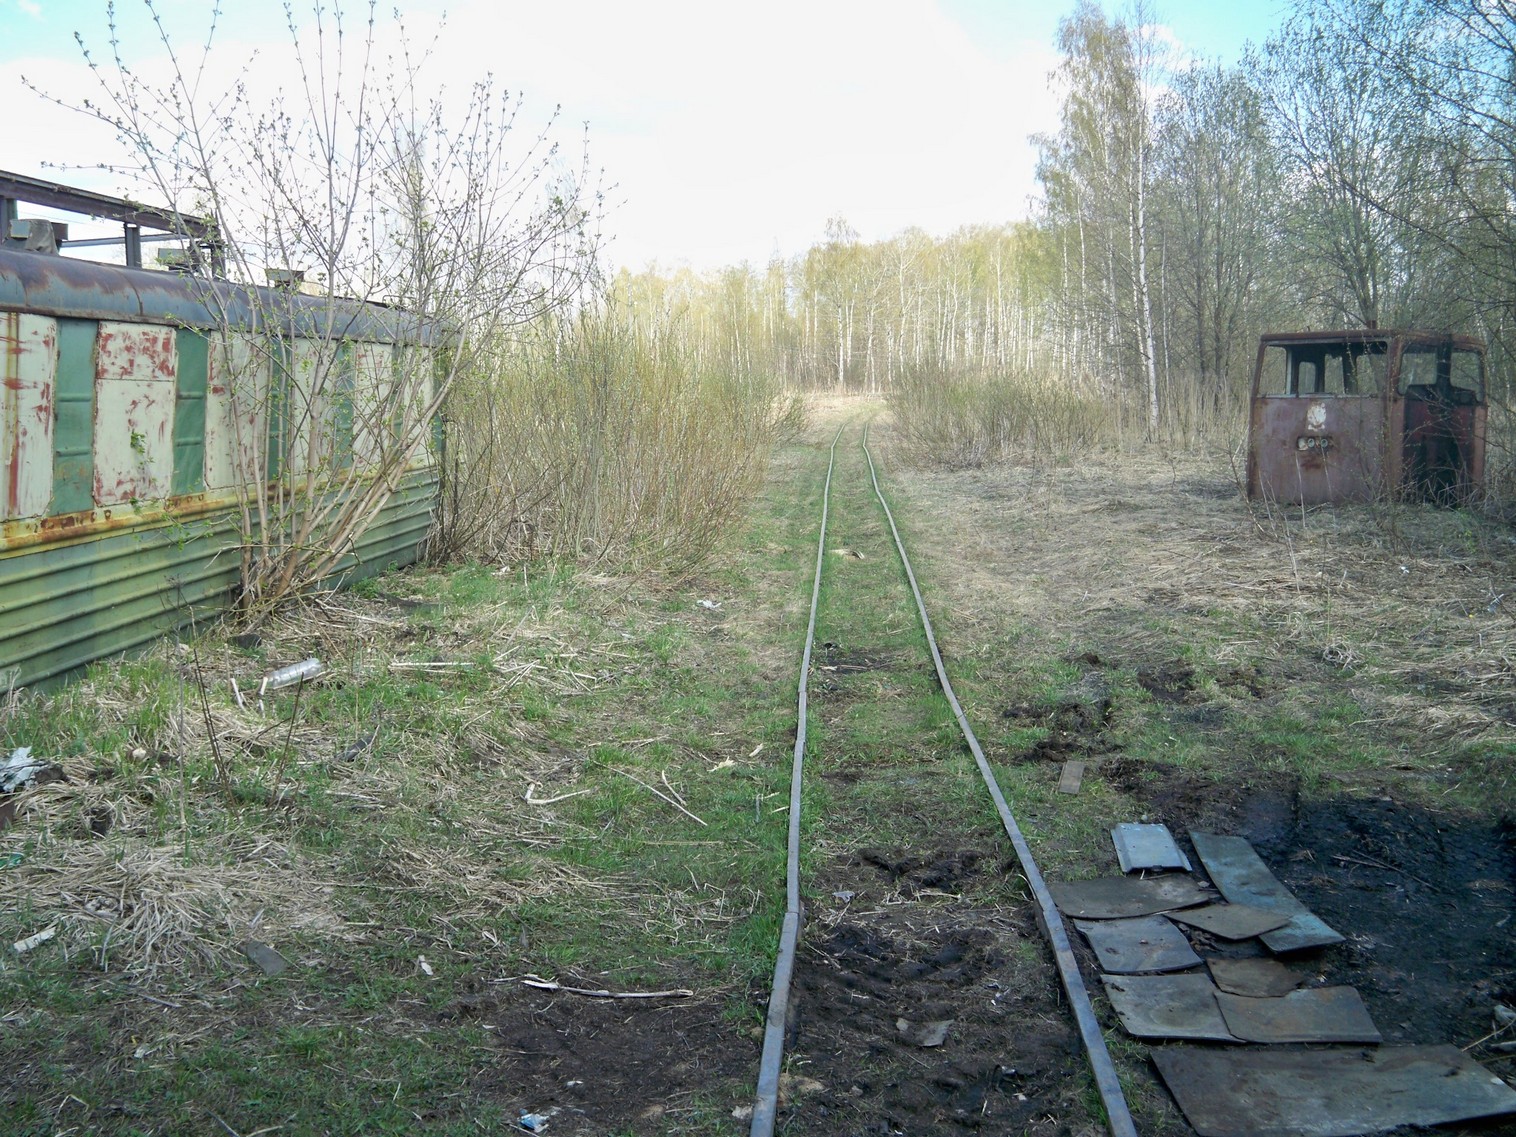 Узкоколейная железная дорога Васильевского предприятия промышленного железнодорожного транспорта  — фотографии, сделанные в 2014 году (часть 4)